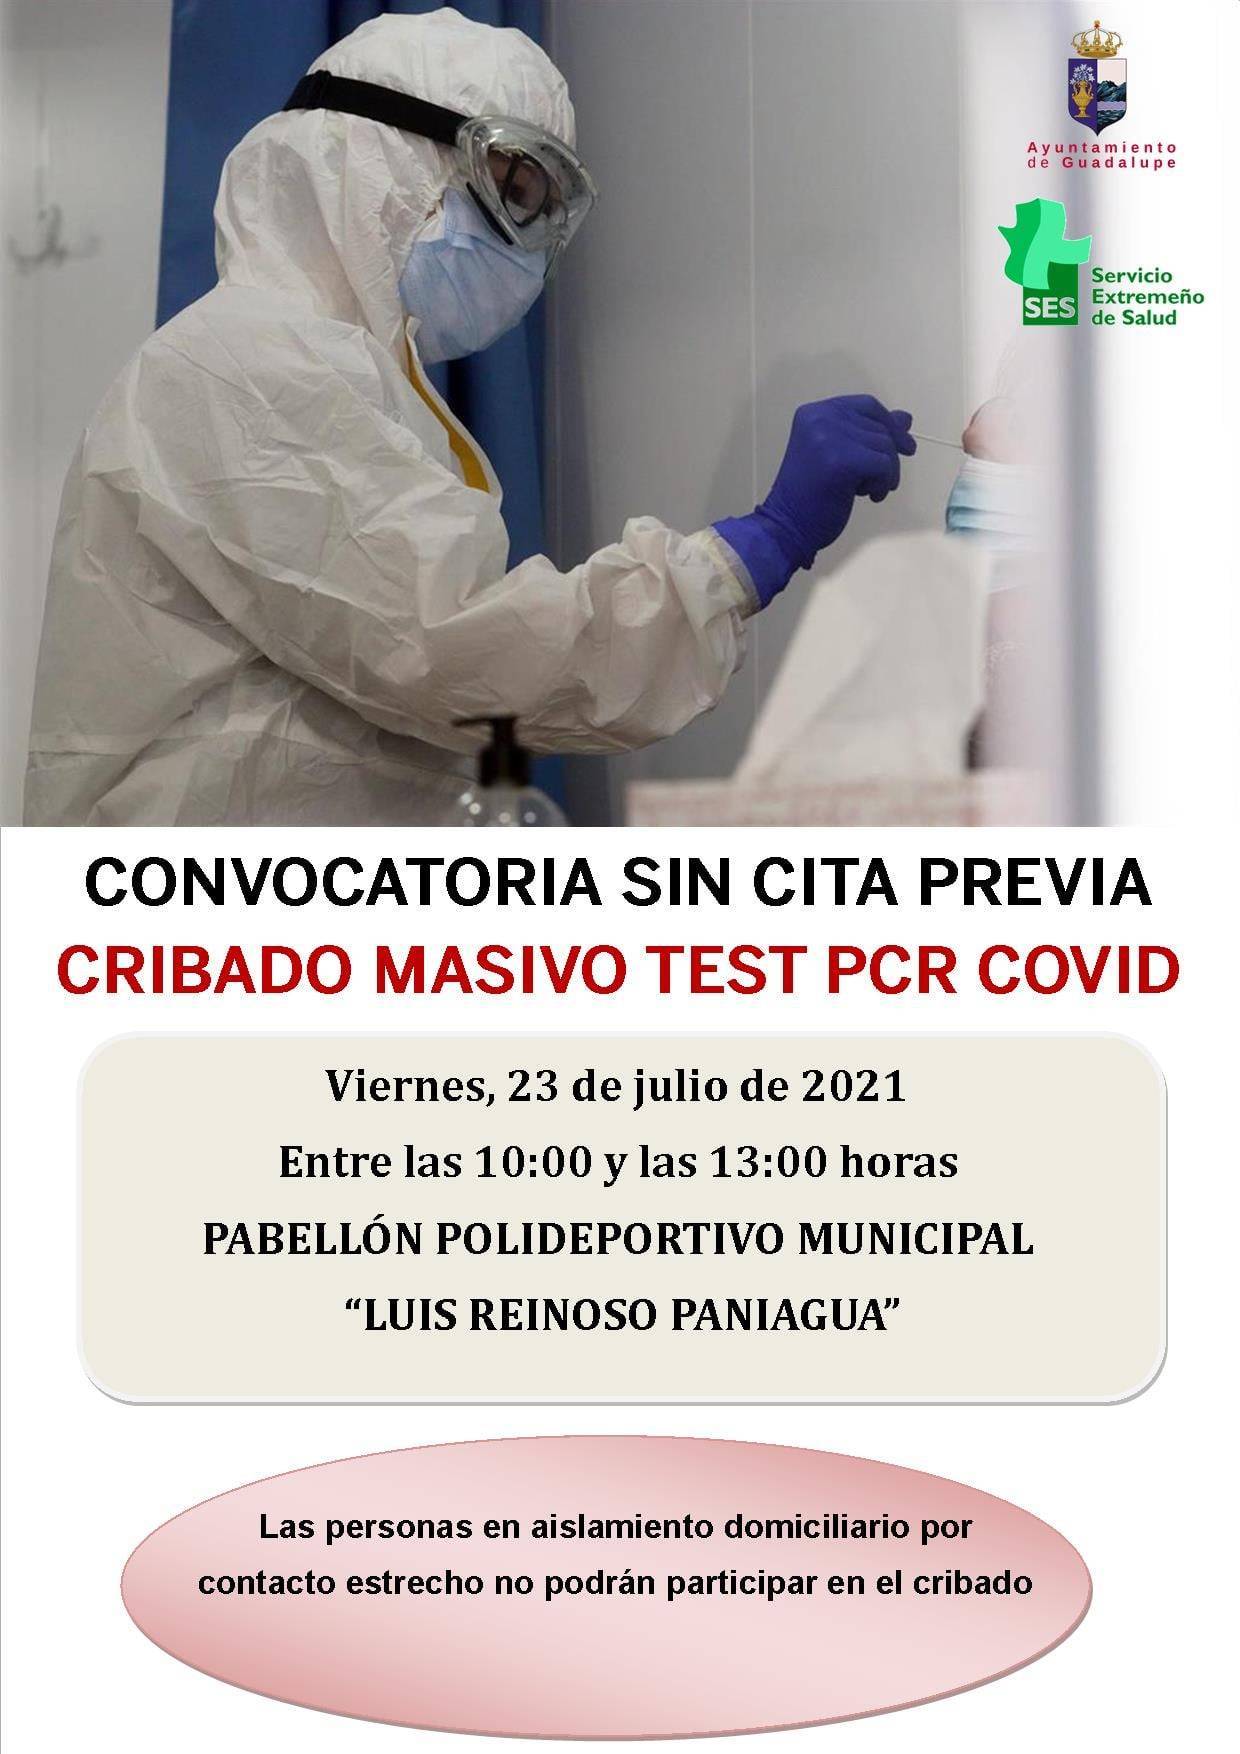 Cribado masivo y nuevo caso positivo de COVID-19 (julio 2021) - Guadalupe (Cáceres) 2